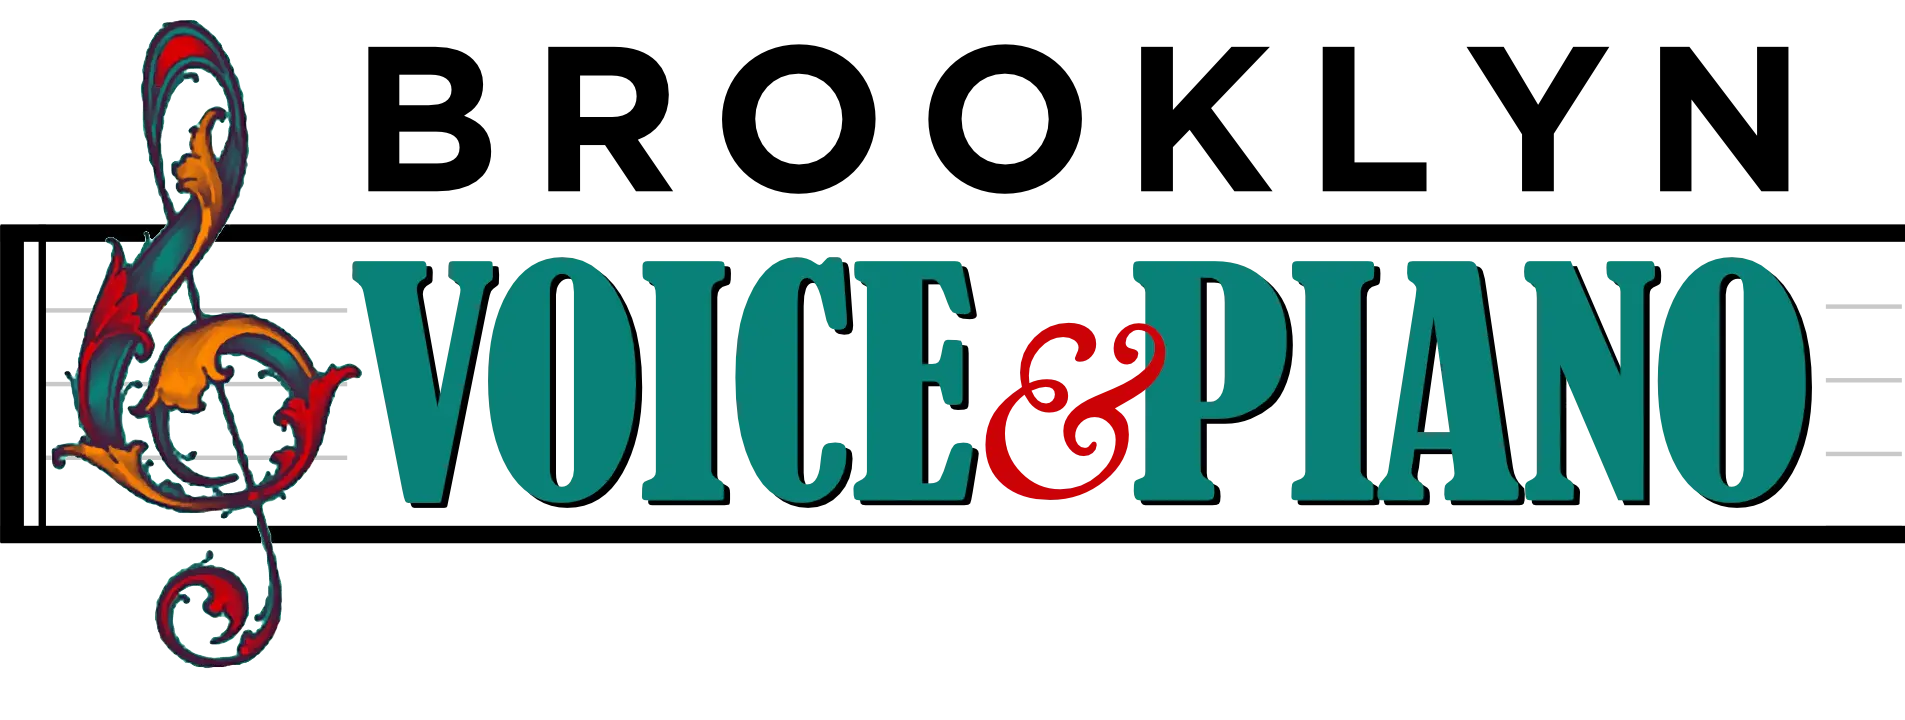 Brooklyn Voice & Piano logo